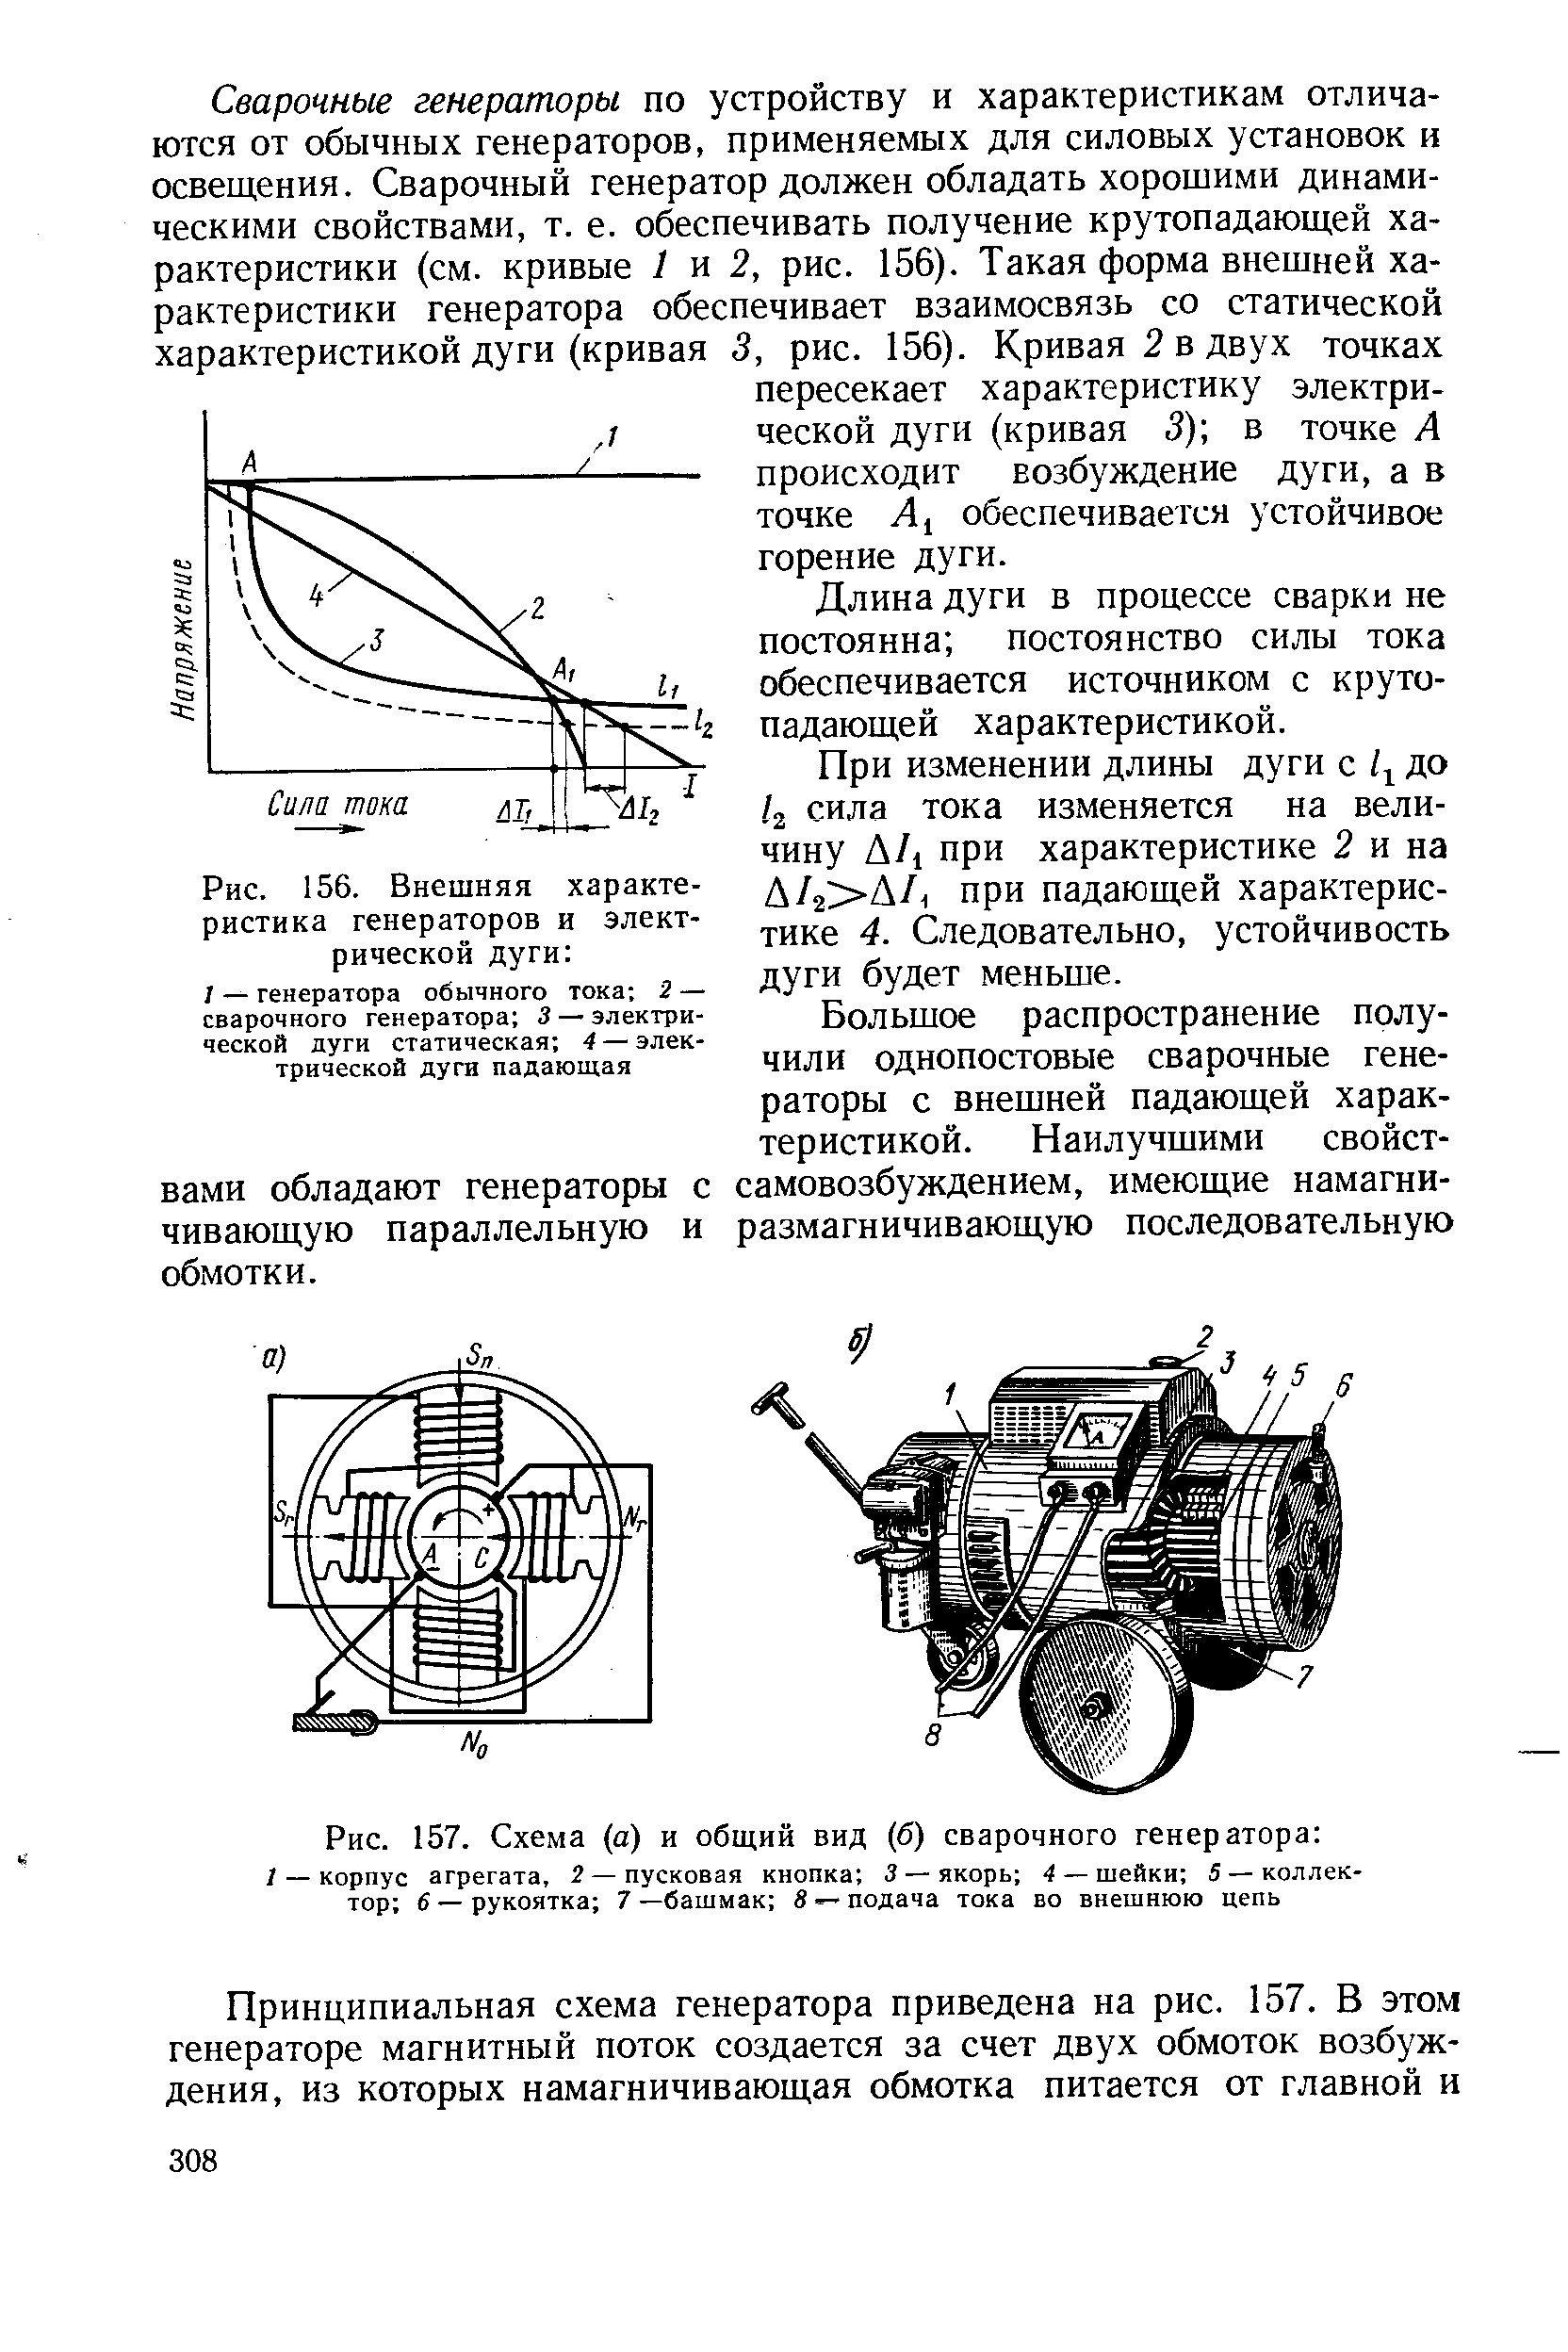 Рис. 156. Внешняя характеристика генераторов и электрической дуги 
